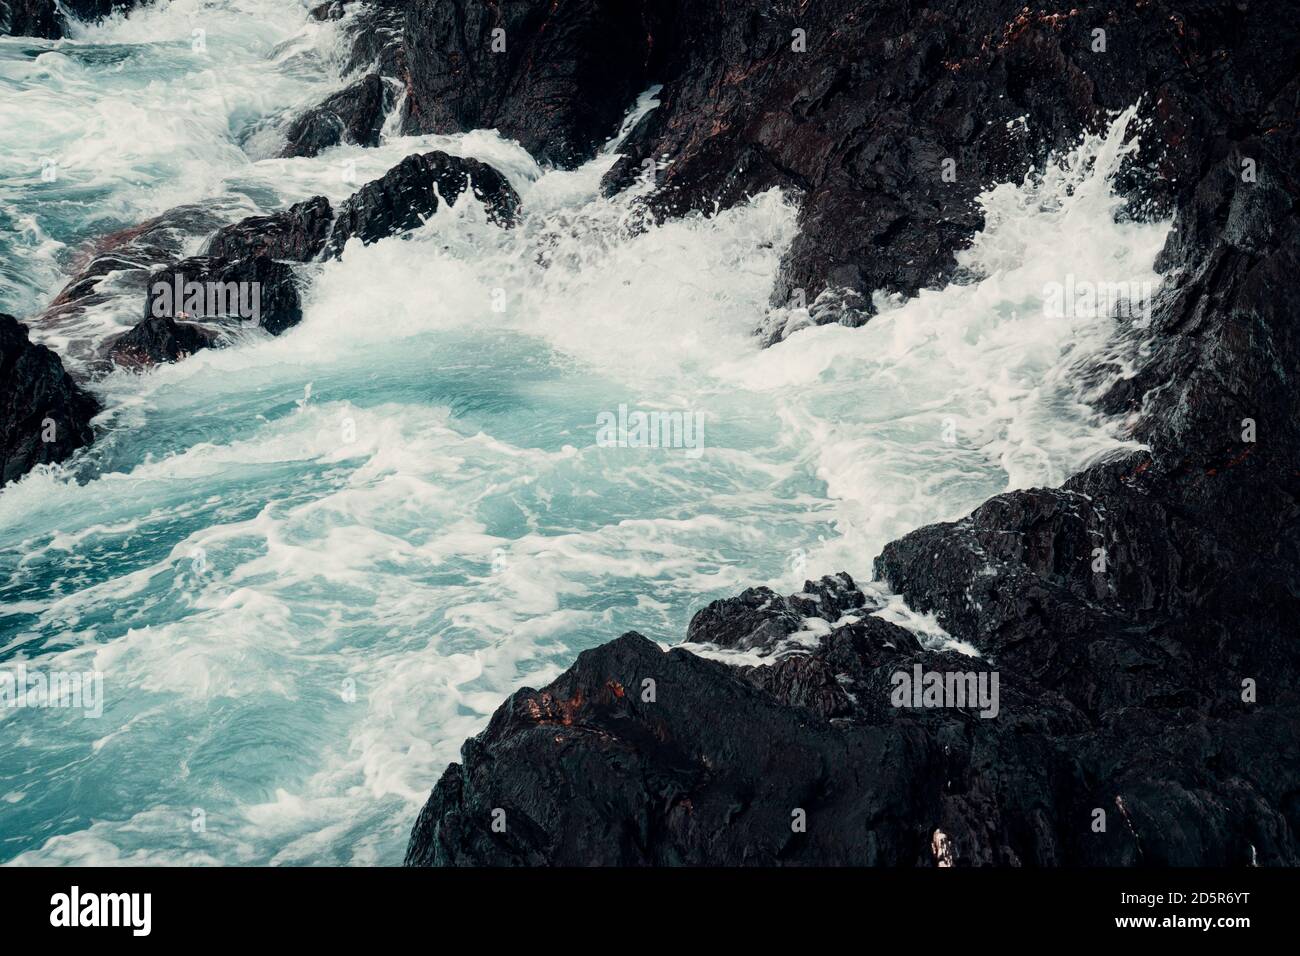 Waves crashing on shore Stock Photo